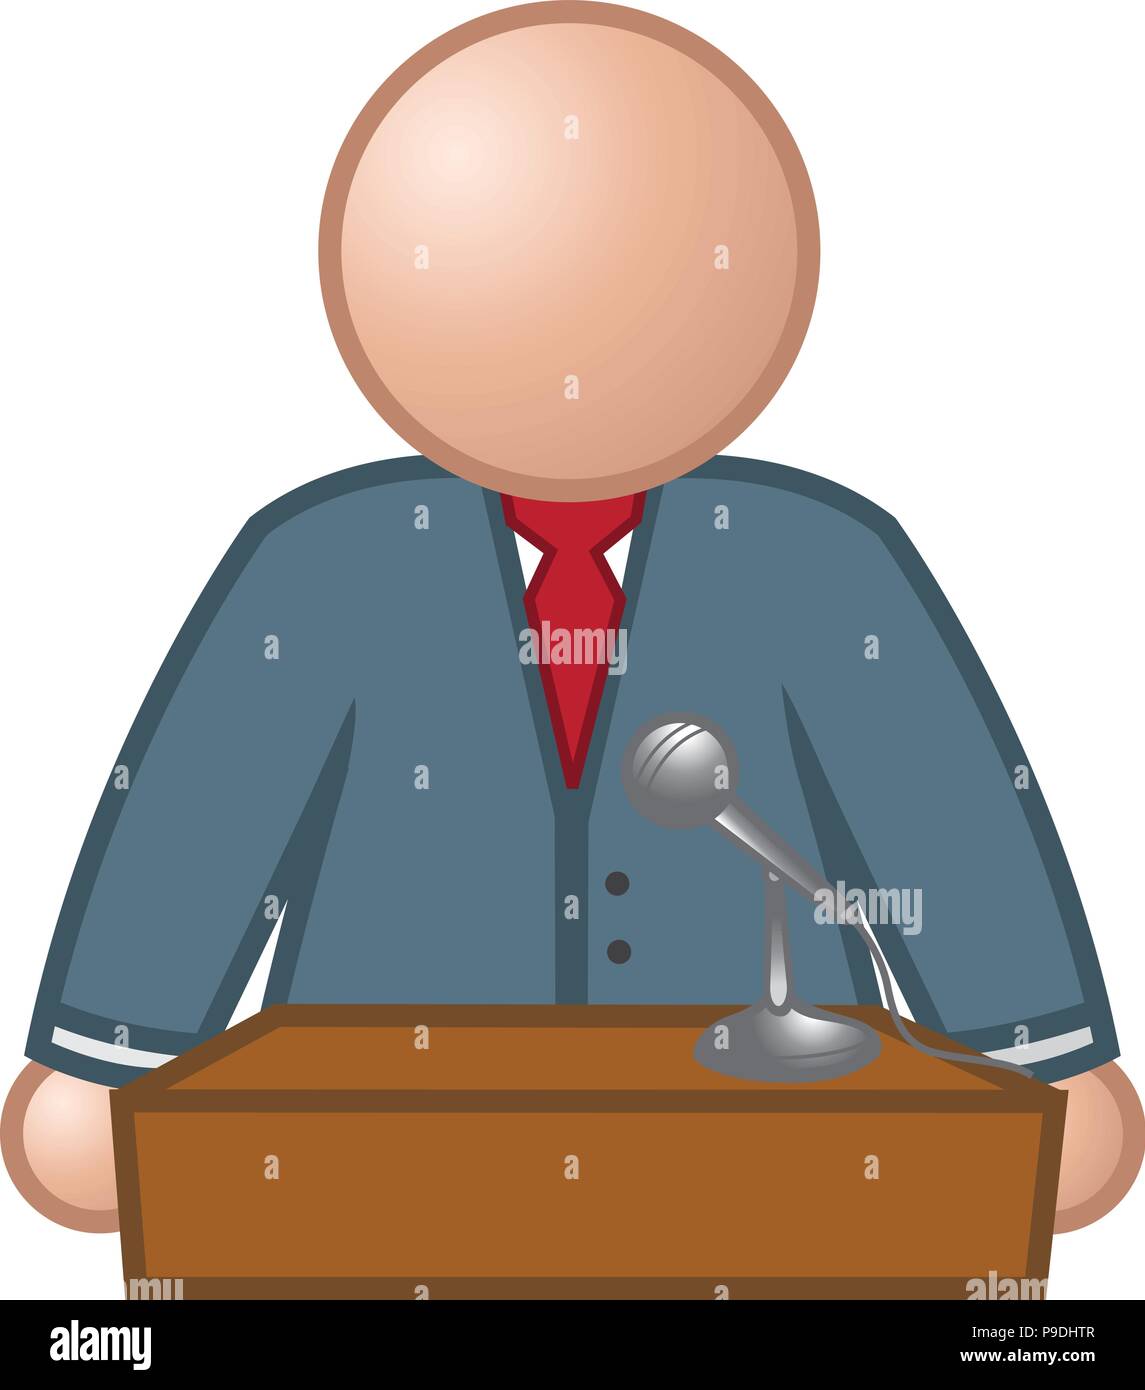 cartoon vector illustration of a speaker podium Stock Vector